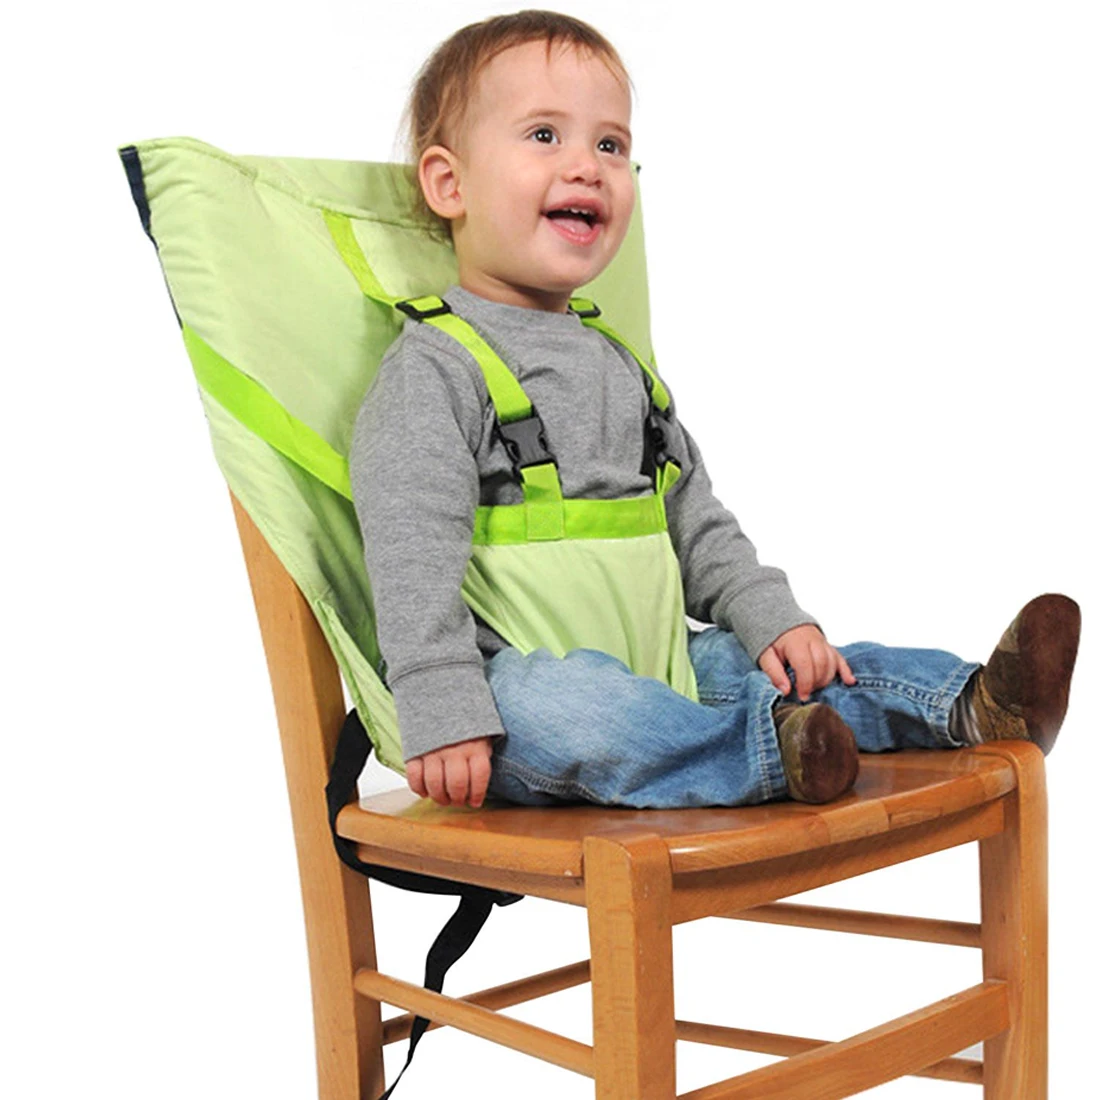 Ремень безопасности с регулируемыми плечевыми ремнями для ребенка портативный универсальный детский высокий стул усилитель